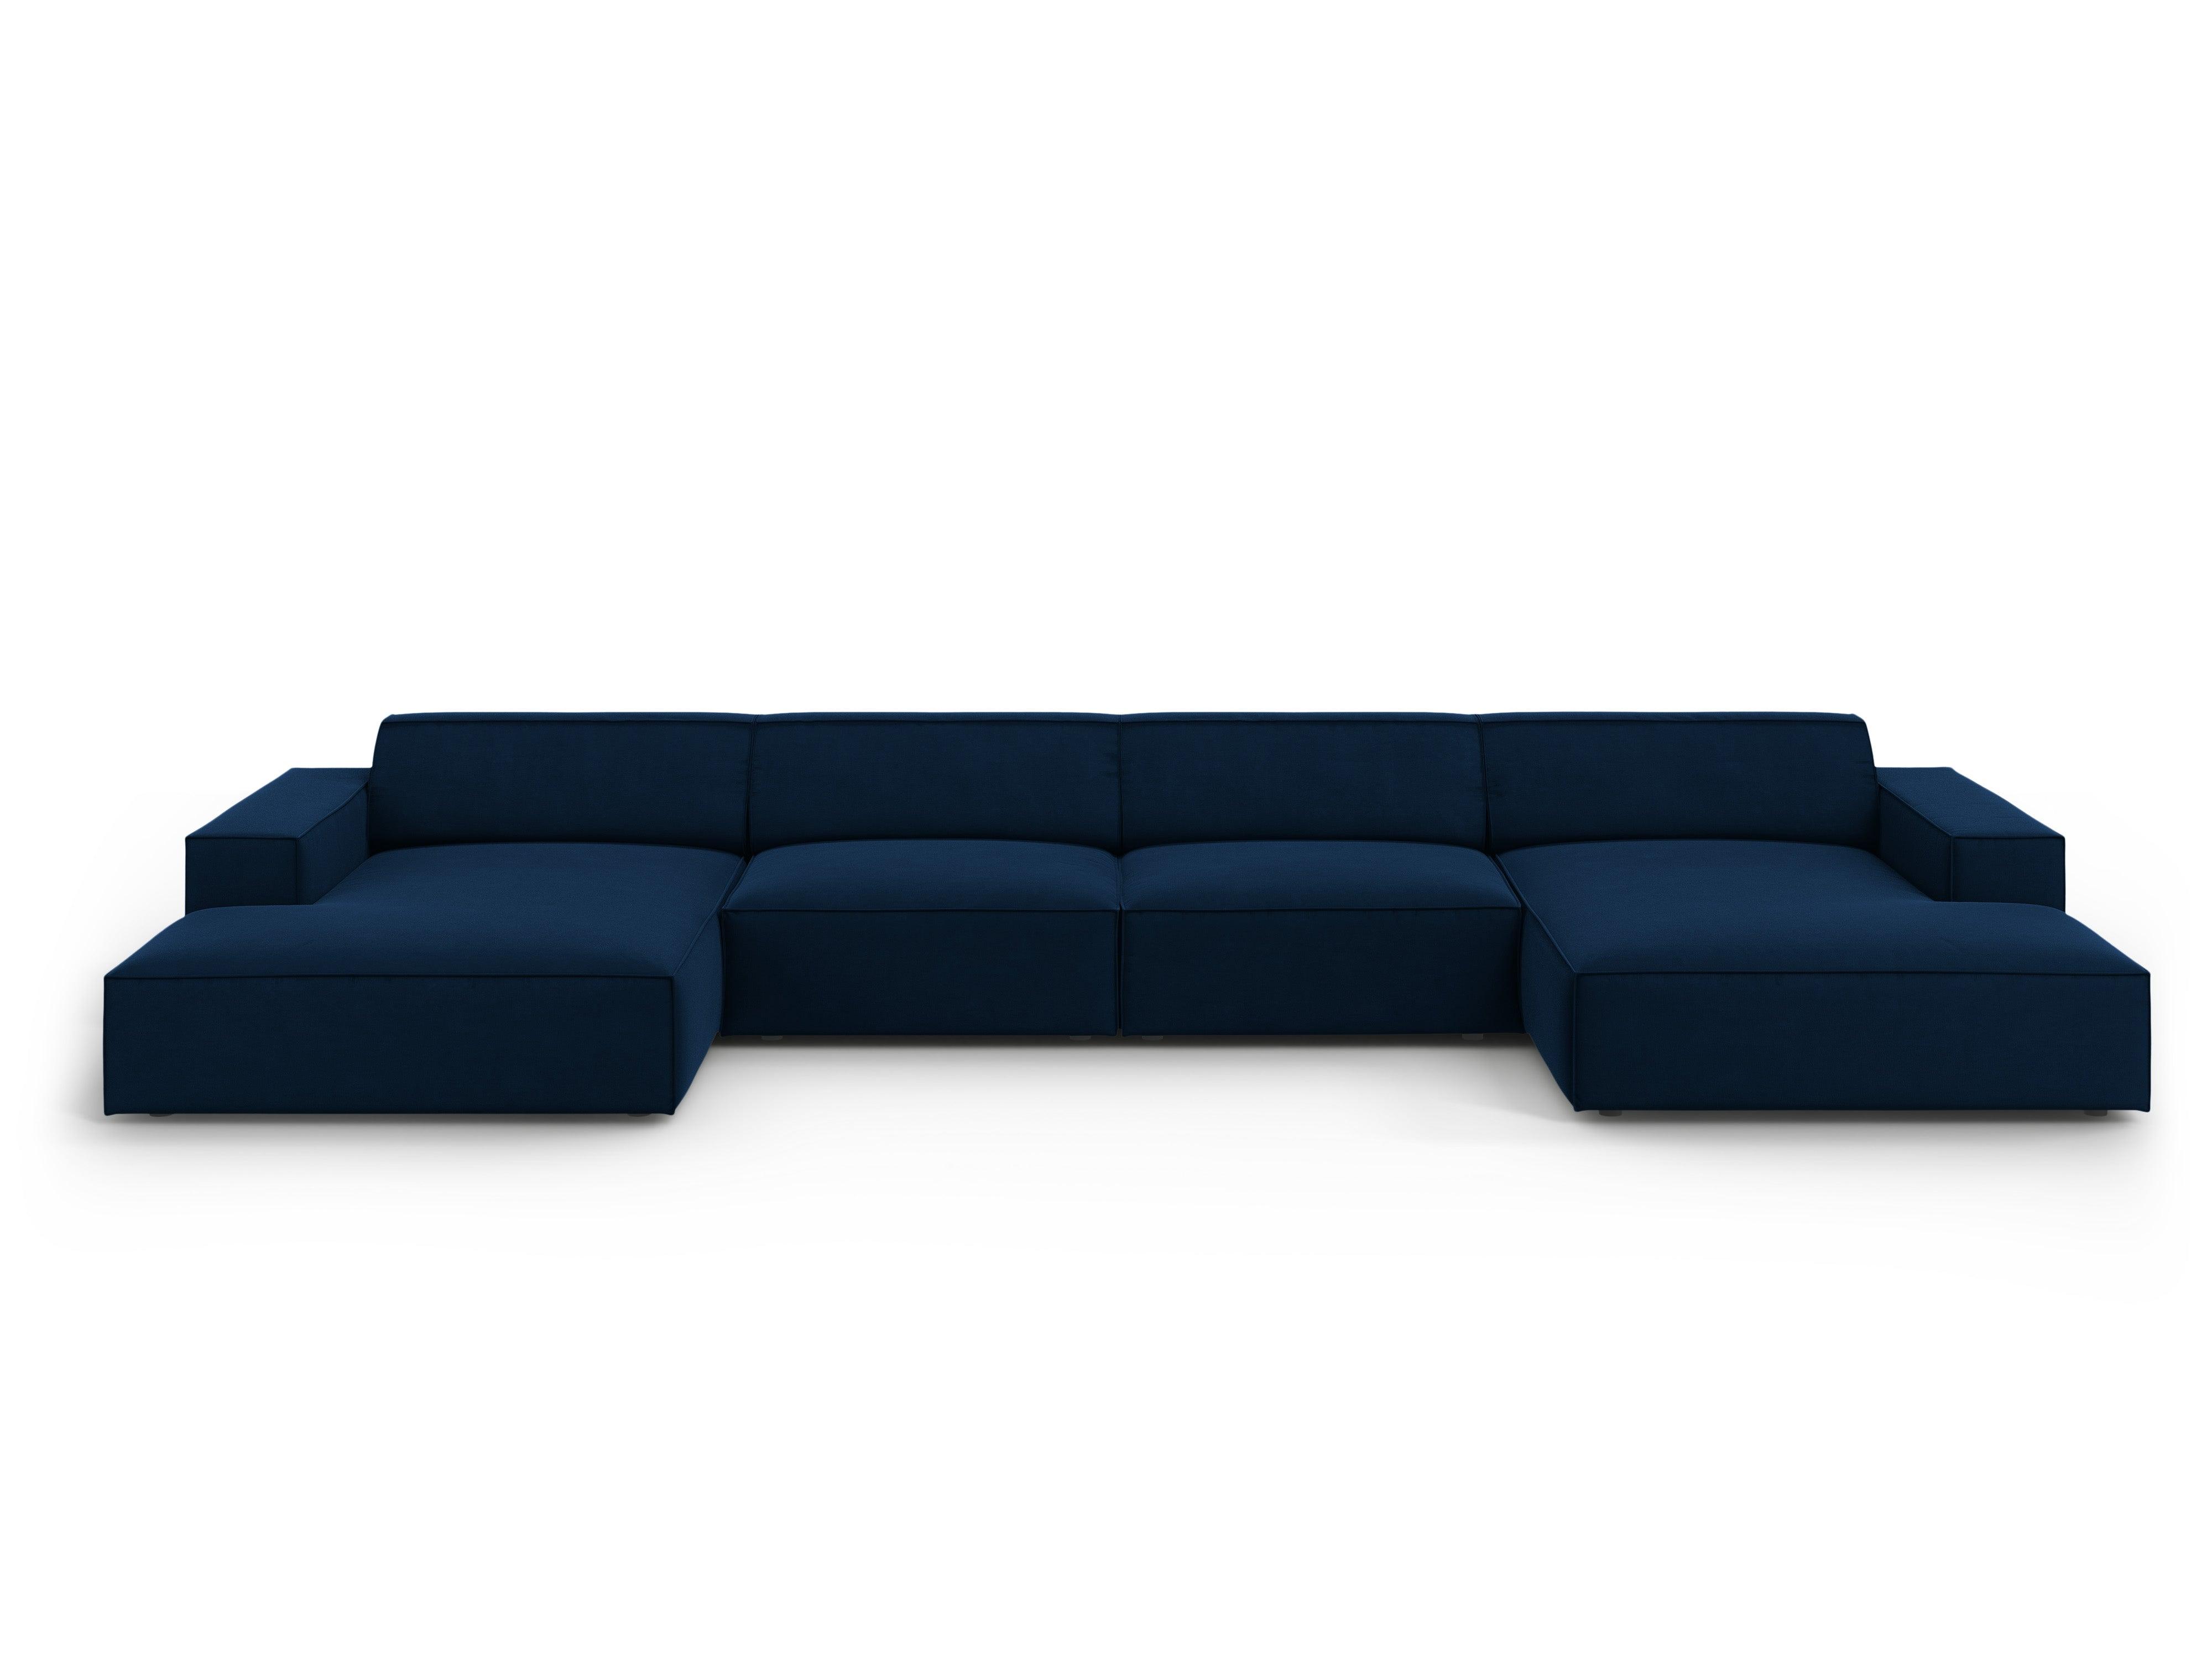 Velvet Panoramic Sofa, "Jodie", 6 Seats, 364x166x70
Made in Europe, Micadoni, Eye on Design